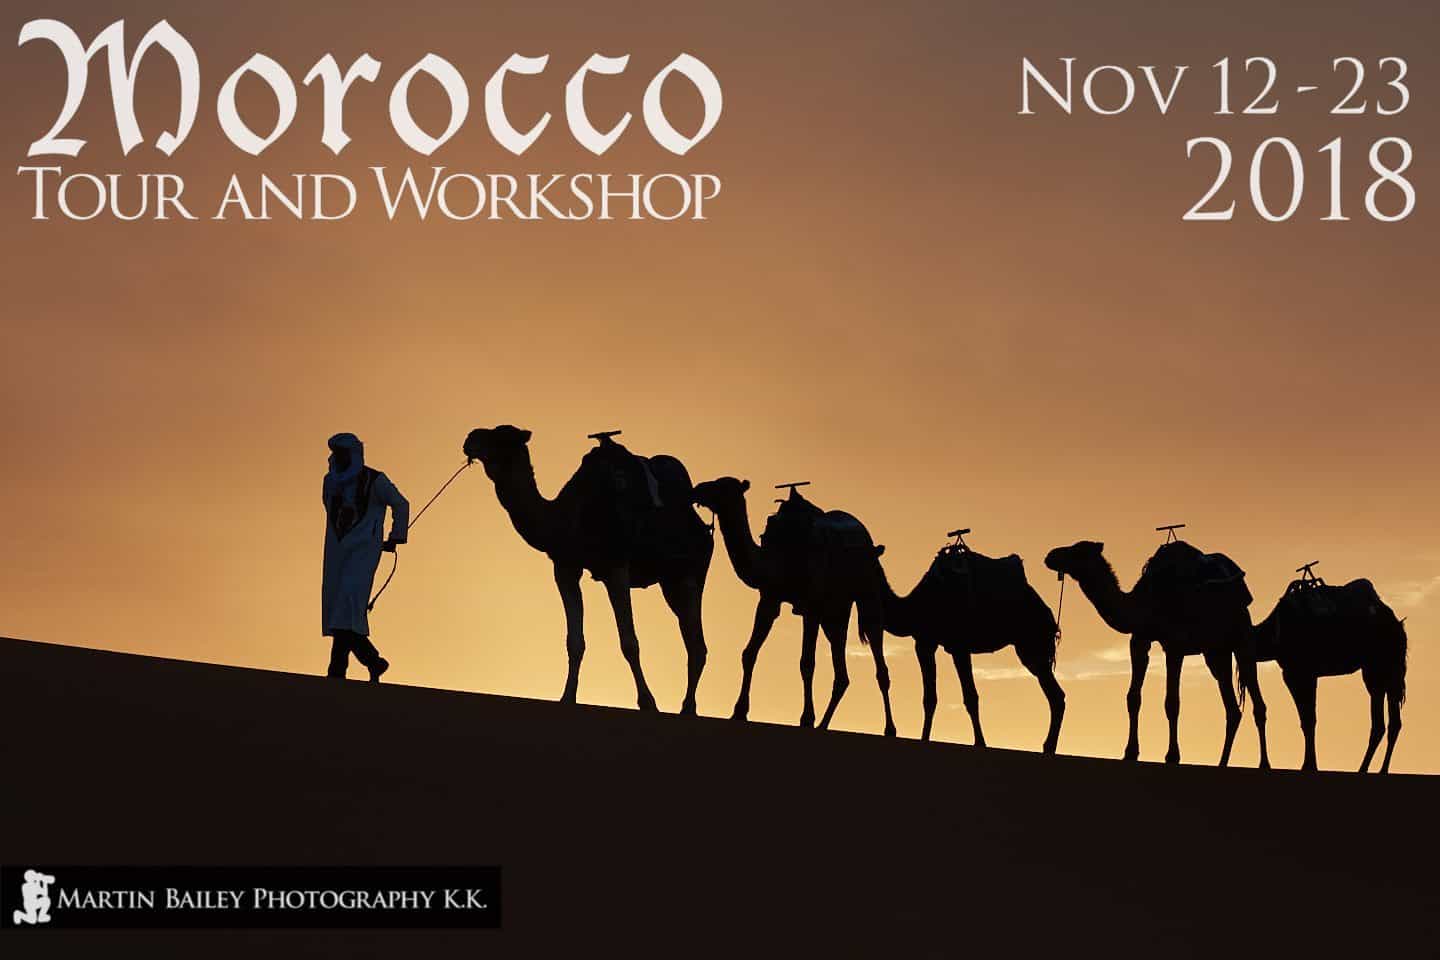 Morocco Tour & Workshop 2018 Reservation